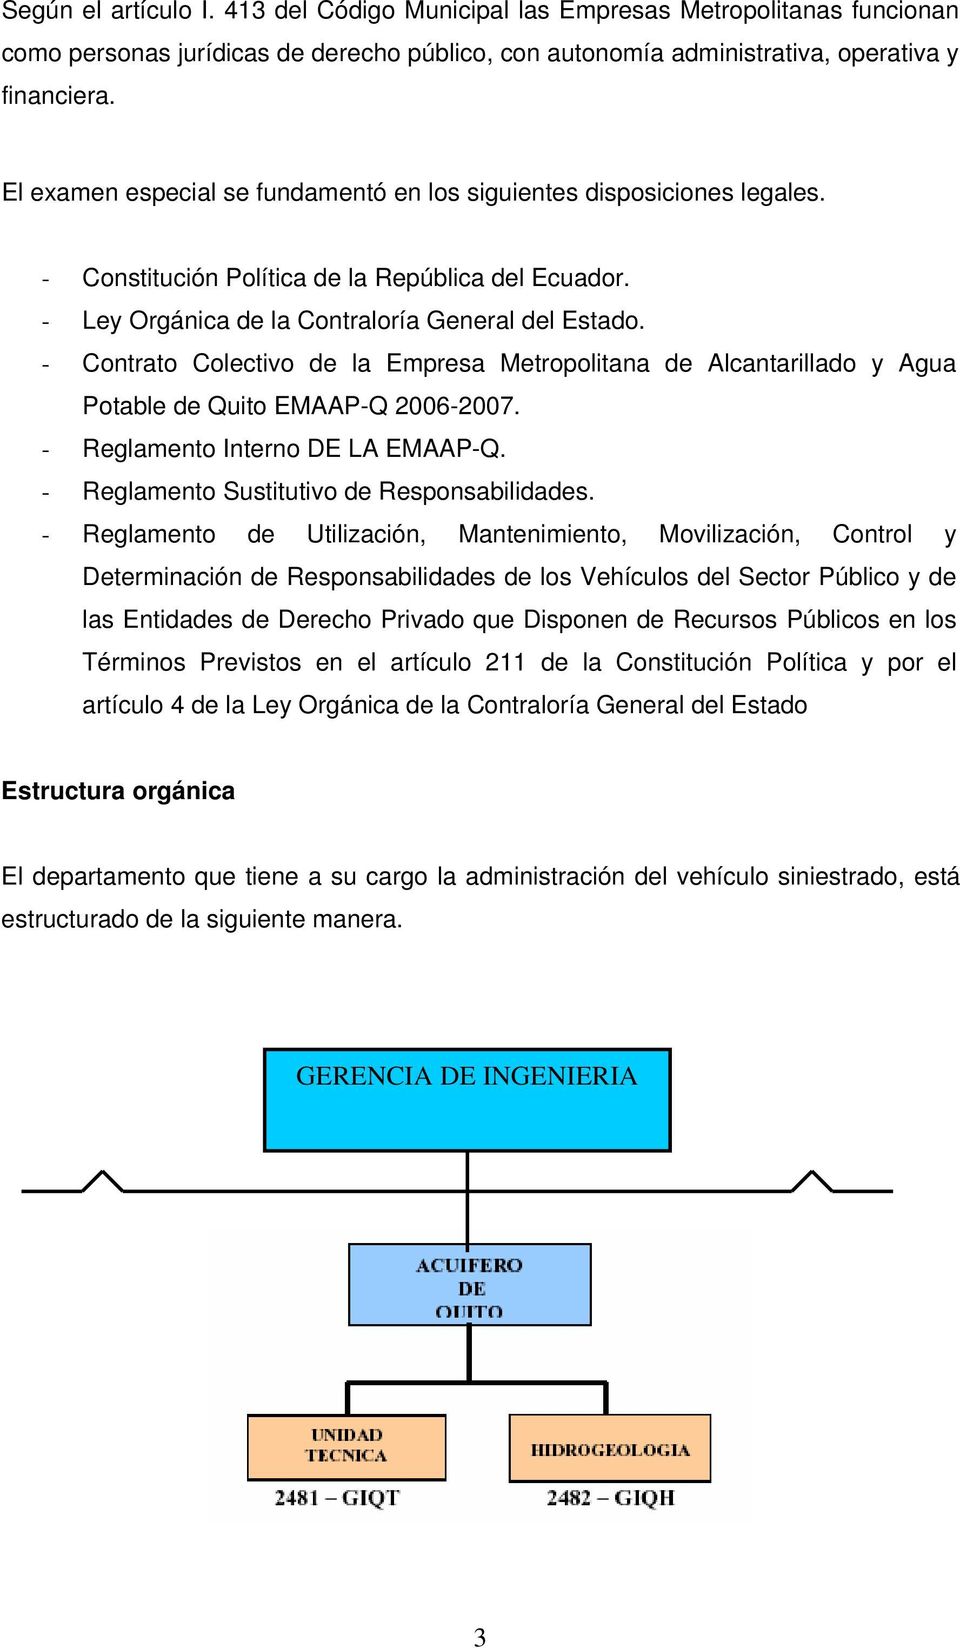 - Contrato Colectivo de la Empresa Metropolitana de Alcantarillado y Agua Potable de Quito EMAAP-Q 2006-2007. - Reglamento Interno DE LA EMAAP-Q. - Reglamento Sustitutivo de Responsabilidades.